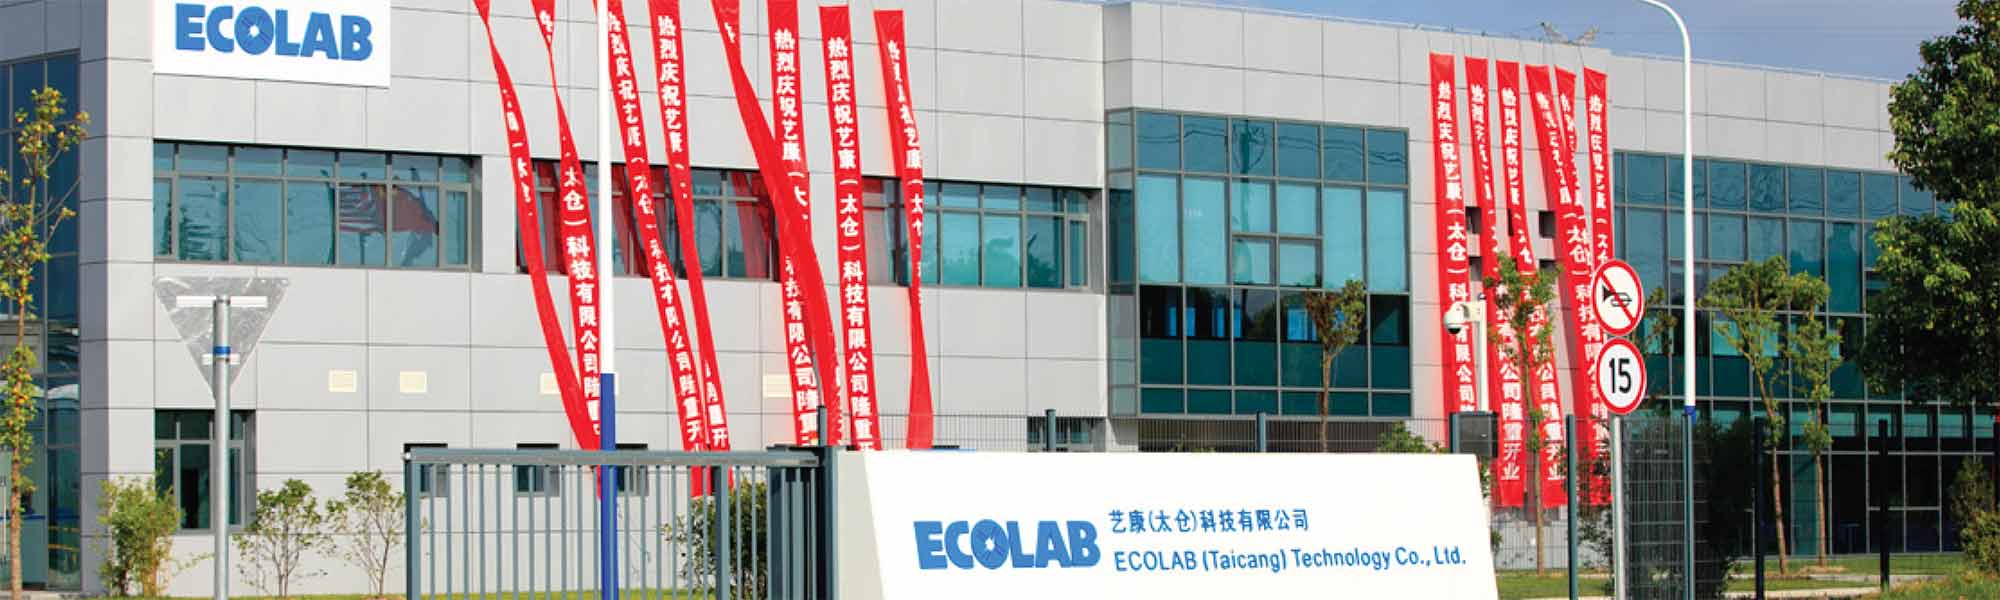 Planta de manufactura de Ecolab en Taicang, China, recibe certificación como líder en administración de agua